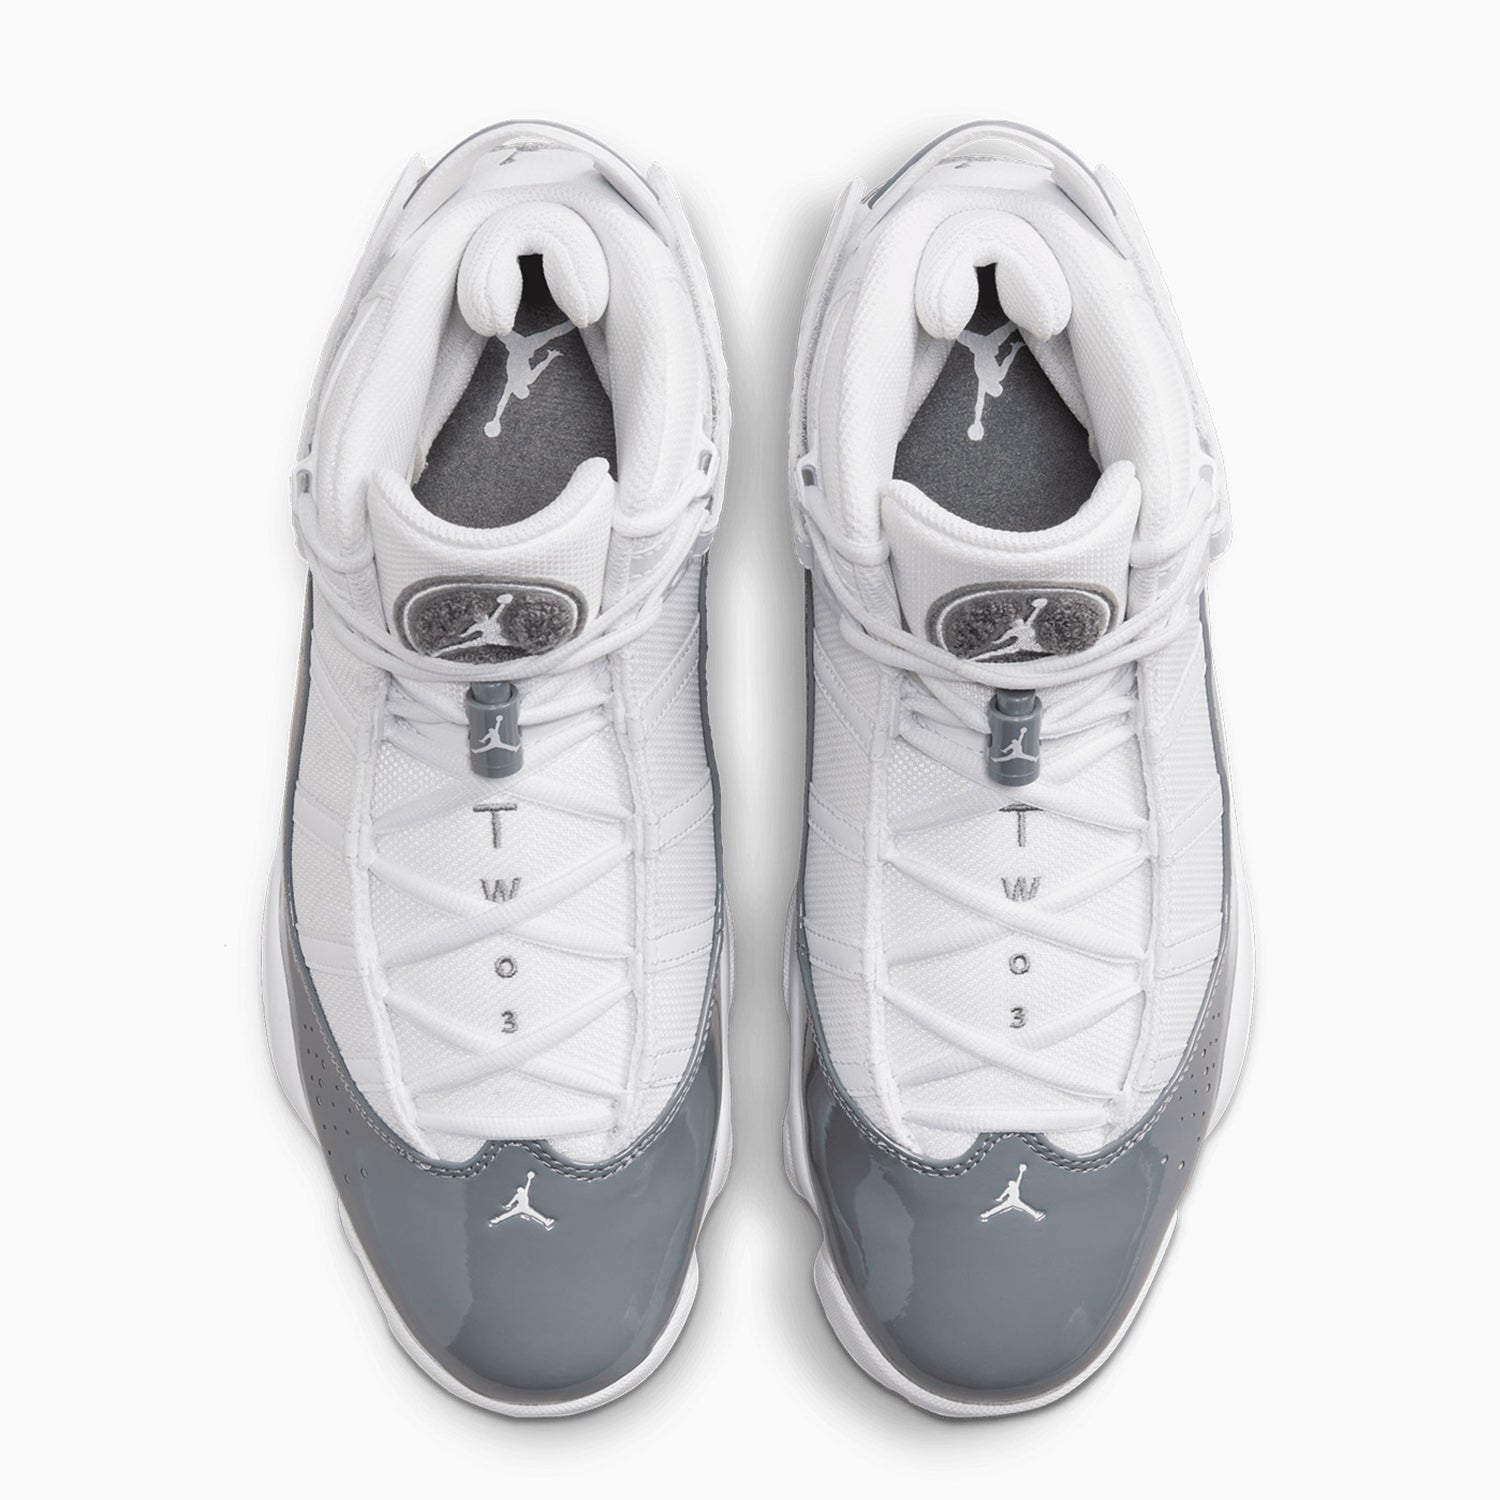 jordan-mens-jordan-6-rings-cool-grey-shoes-322992-121